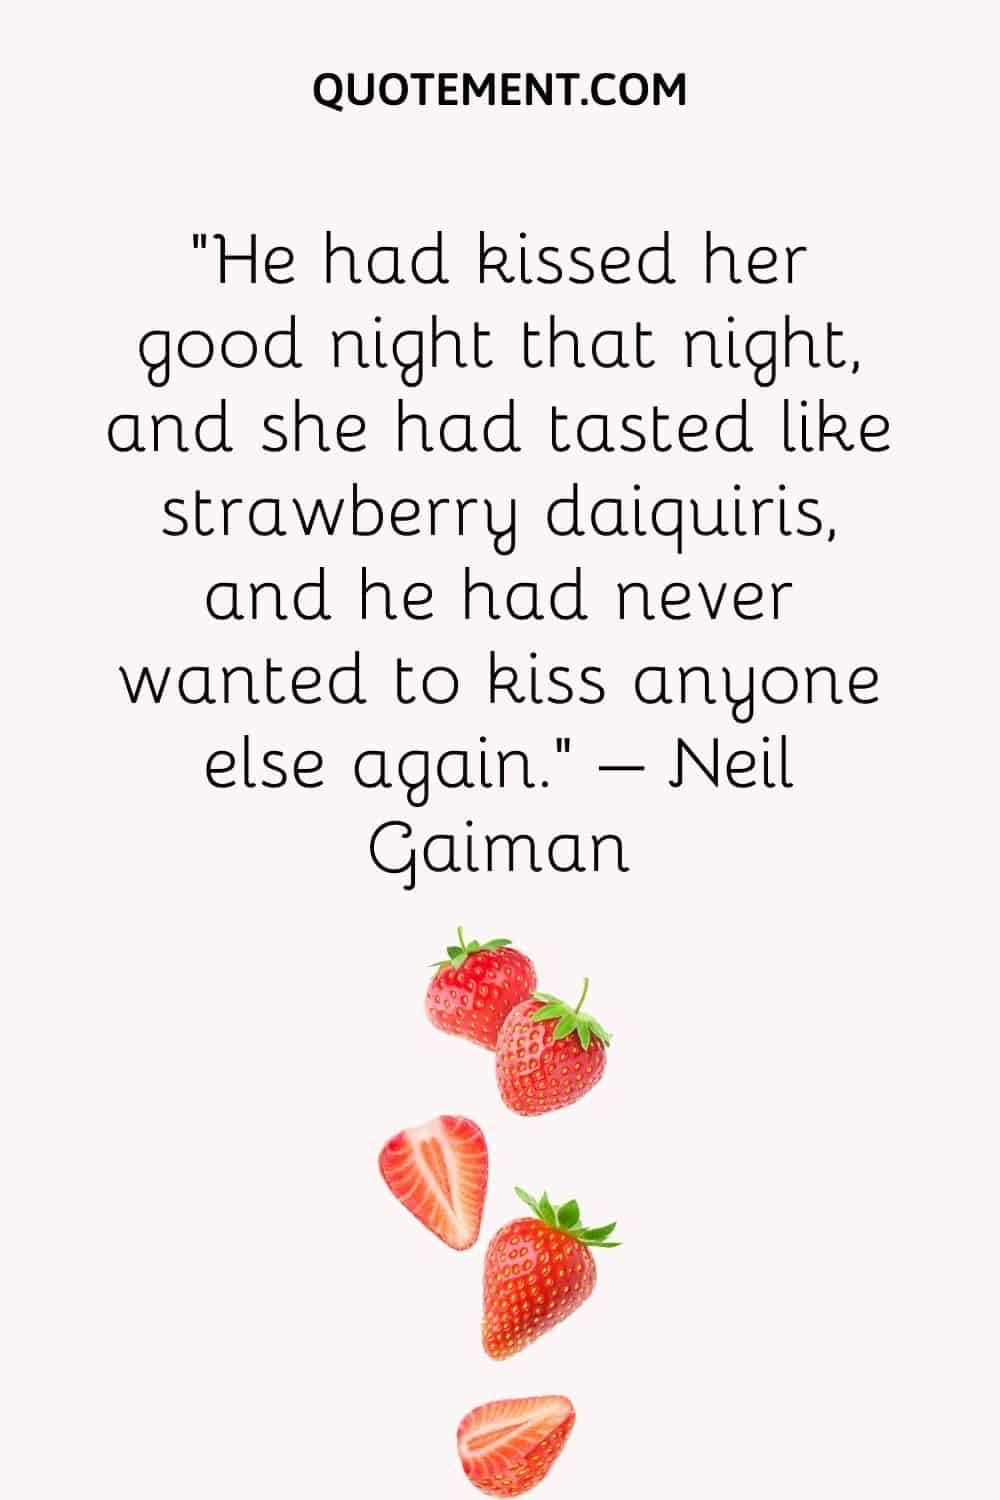 Aquella noche le había dado un beso de buenas noches, y ella le había sabido a daiquiris de fresa, y él no había querido volver a besar a nadie más.